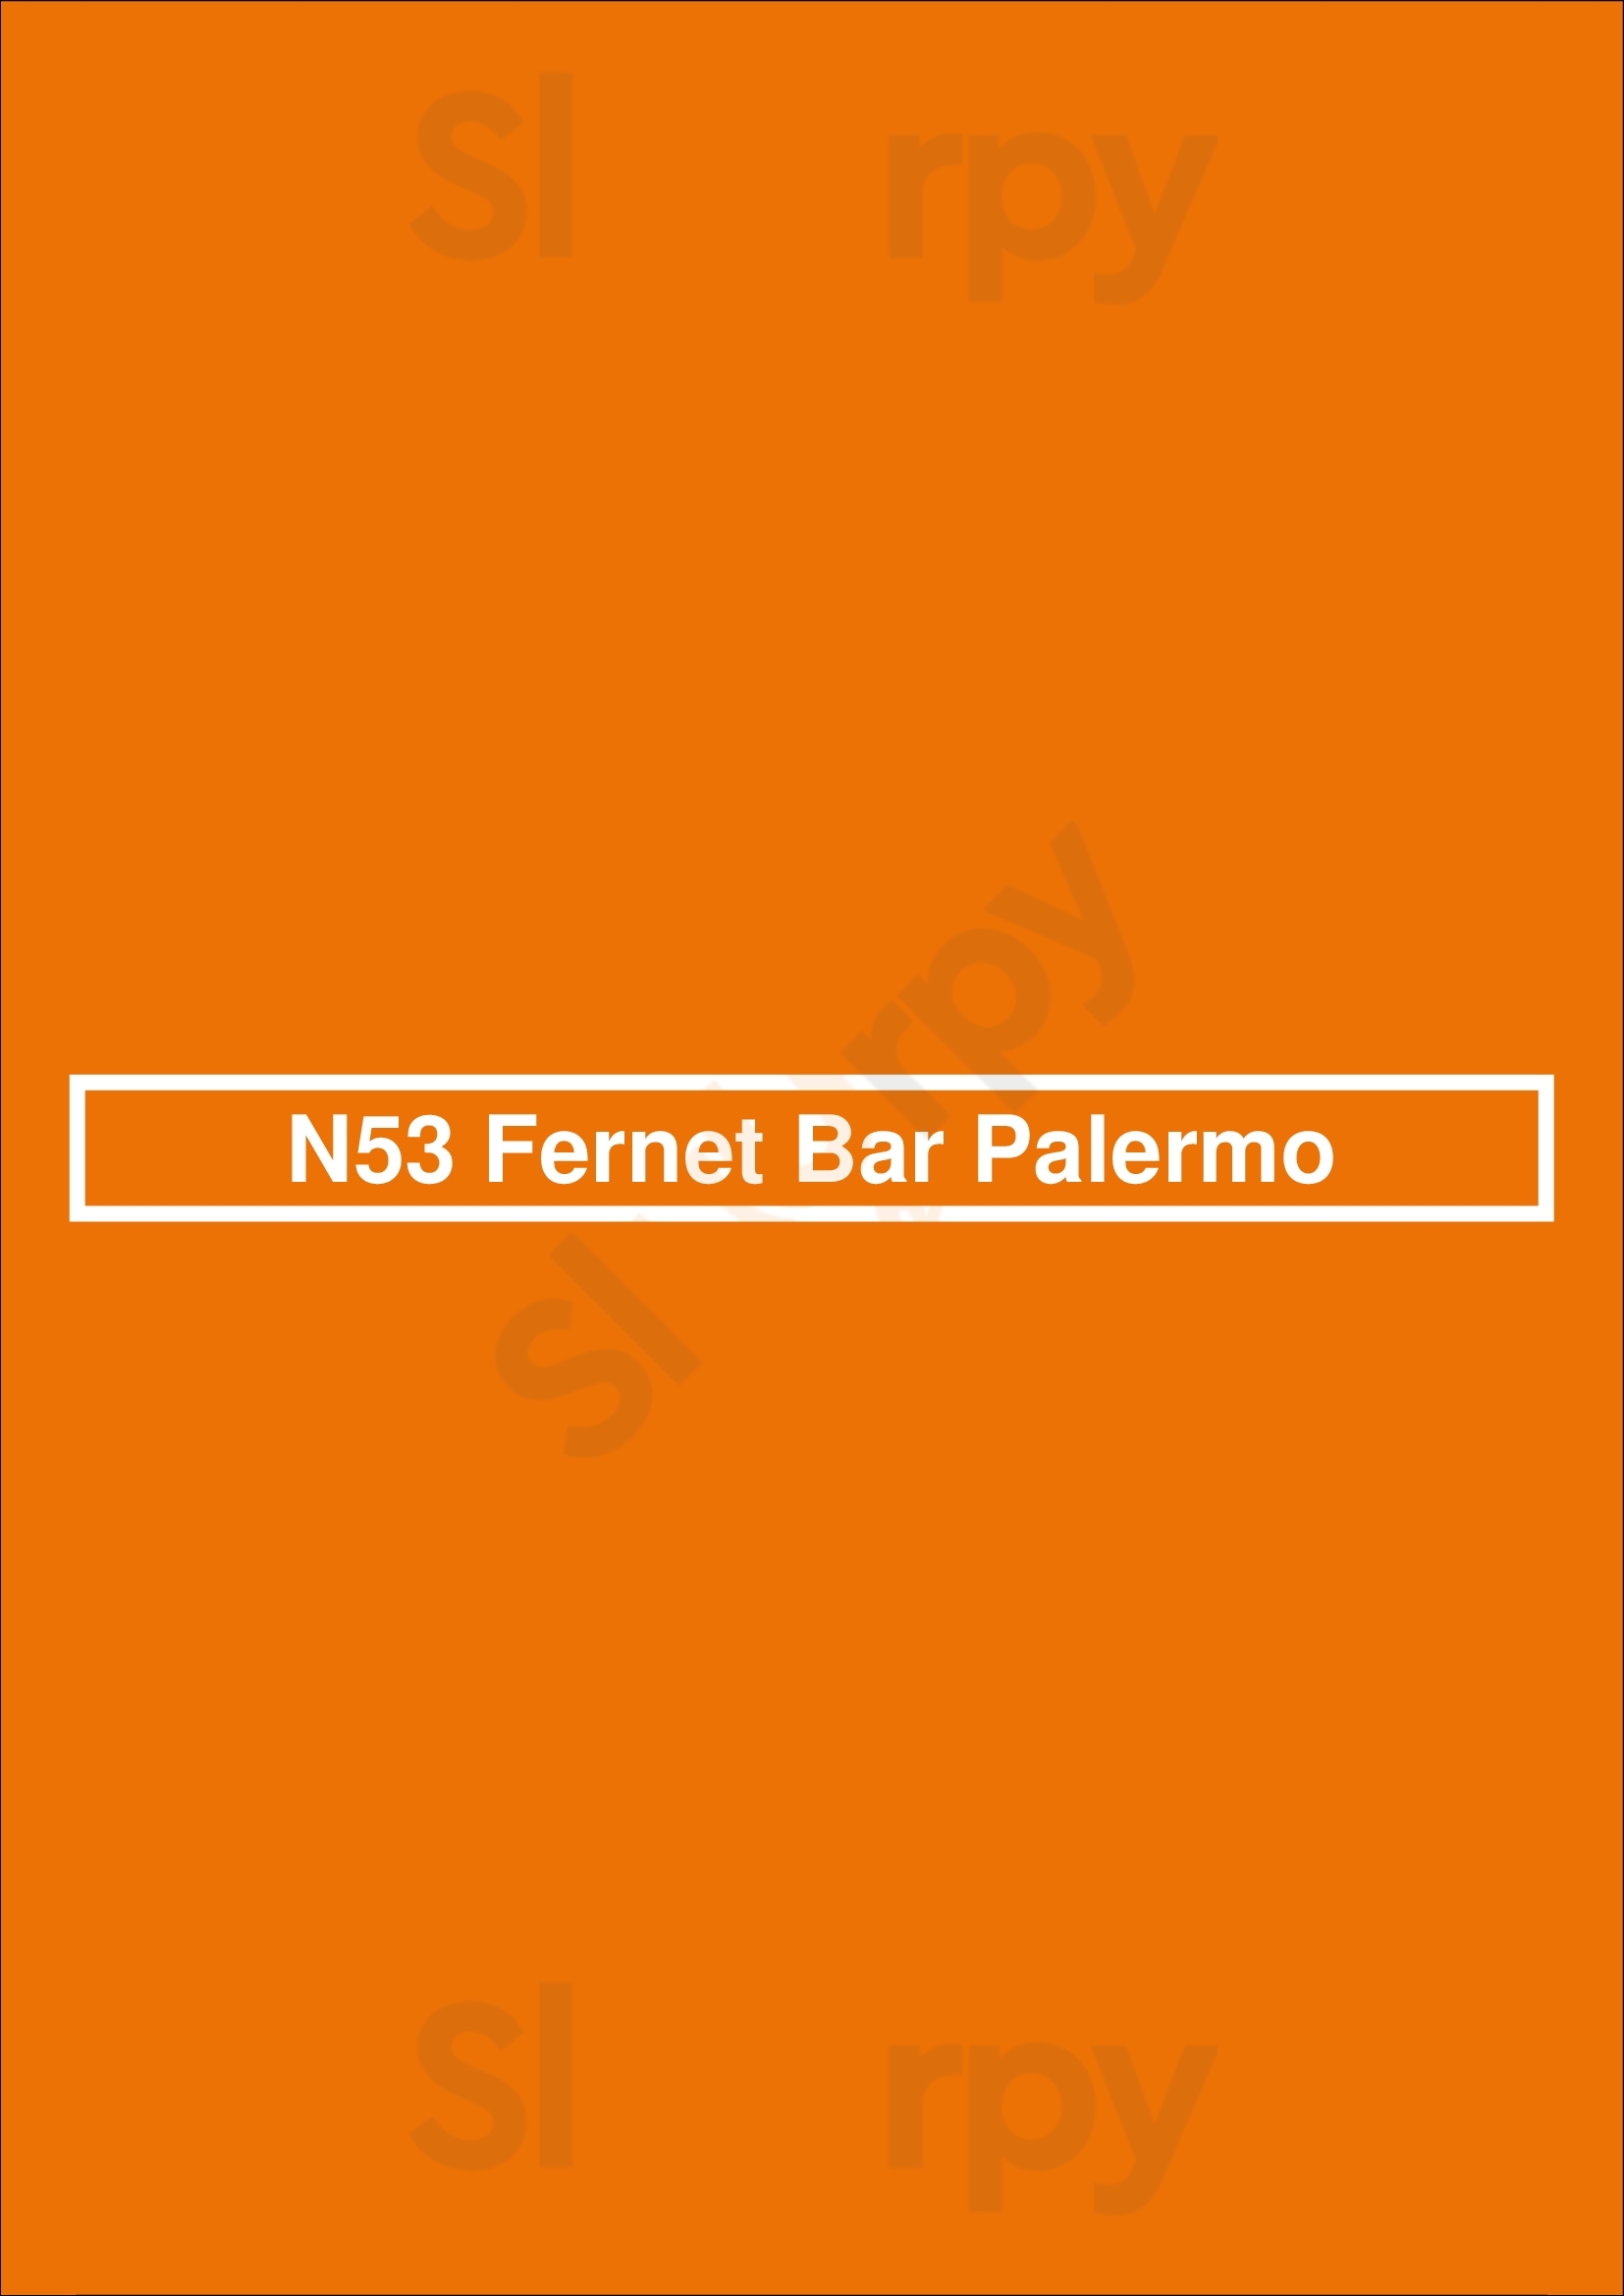 N53 Fernet Bar Palermo Buenos Aires Menu - 1